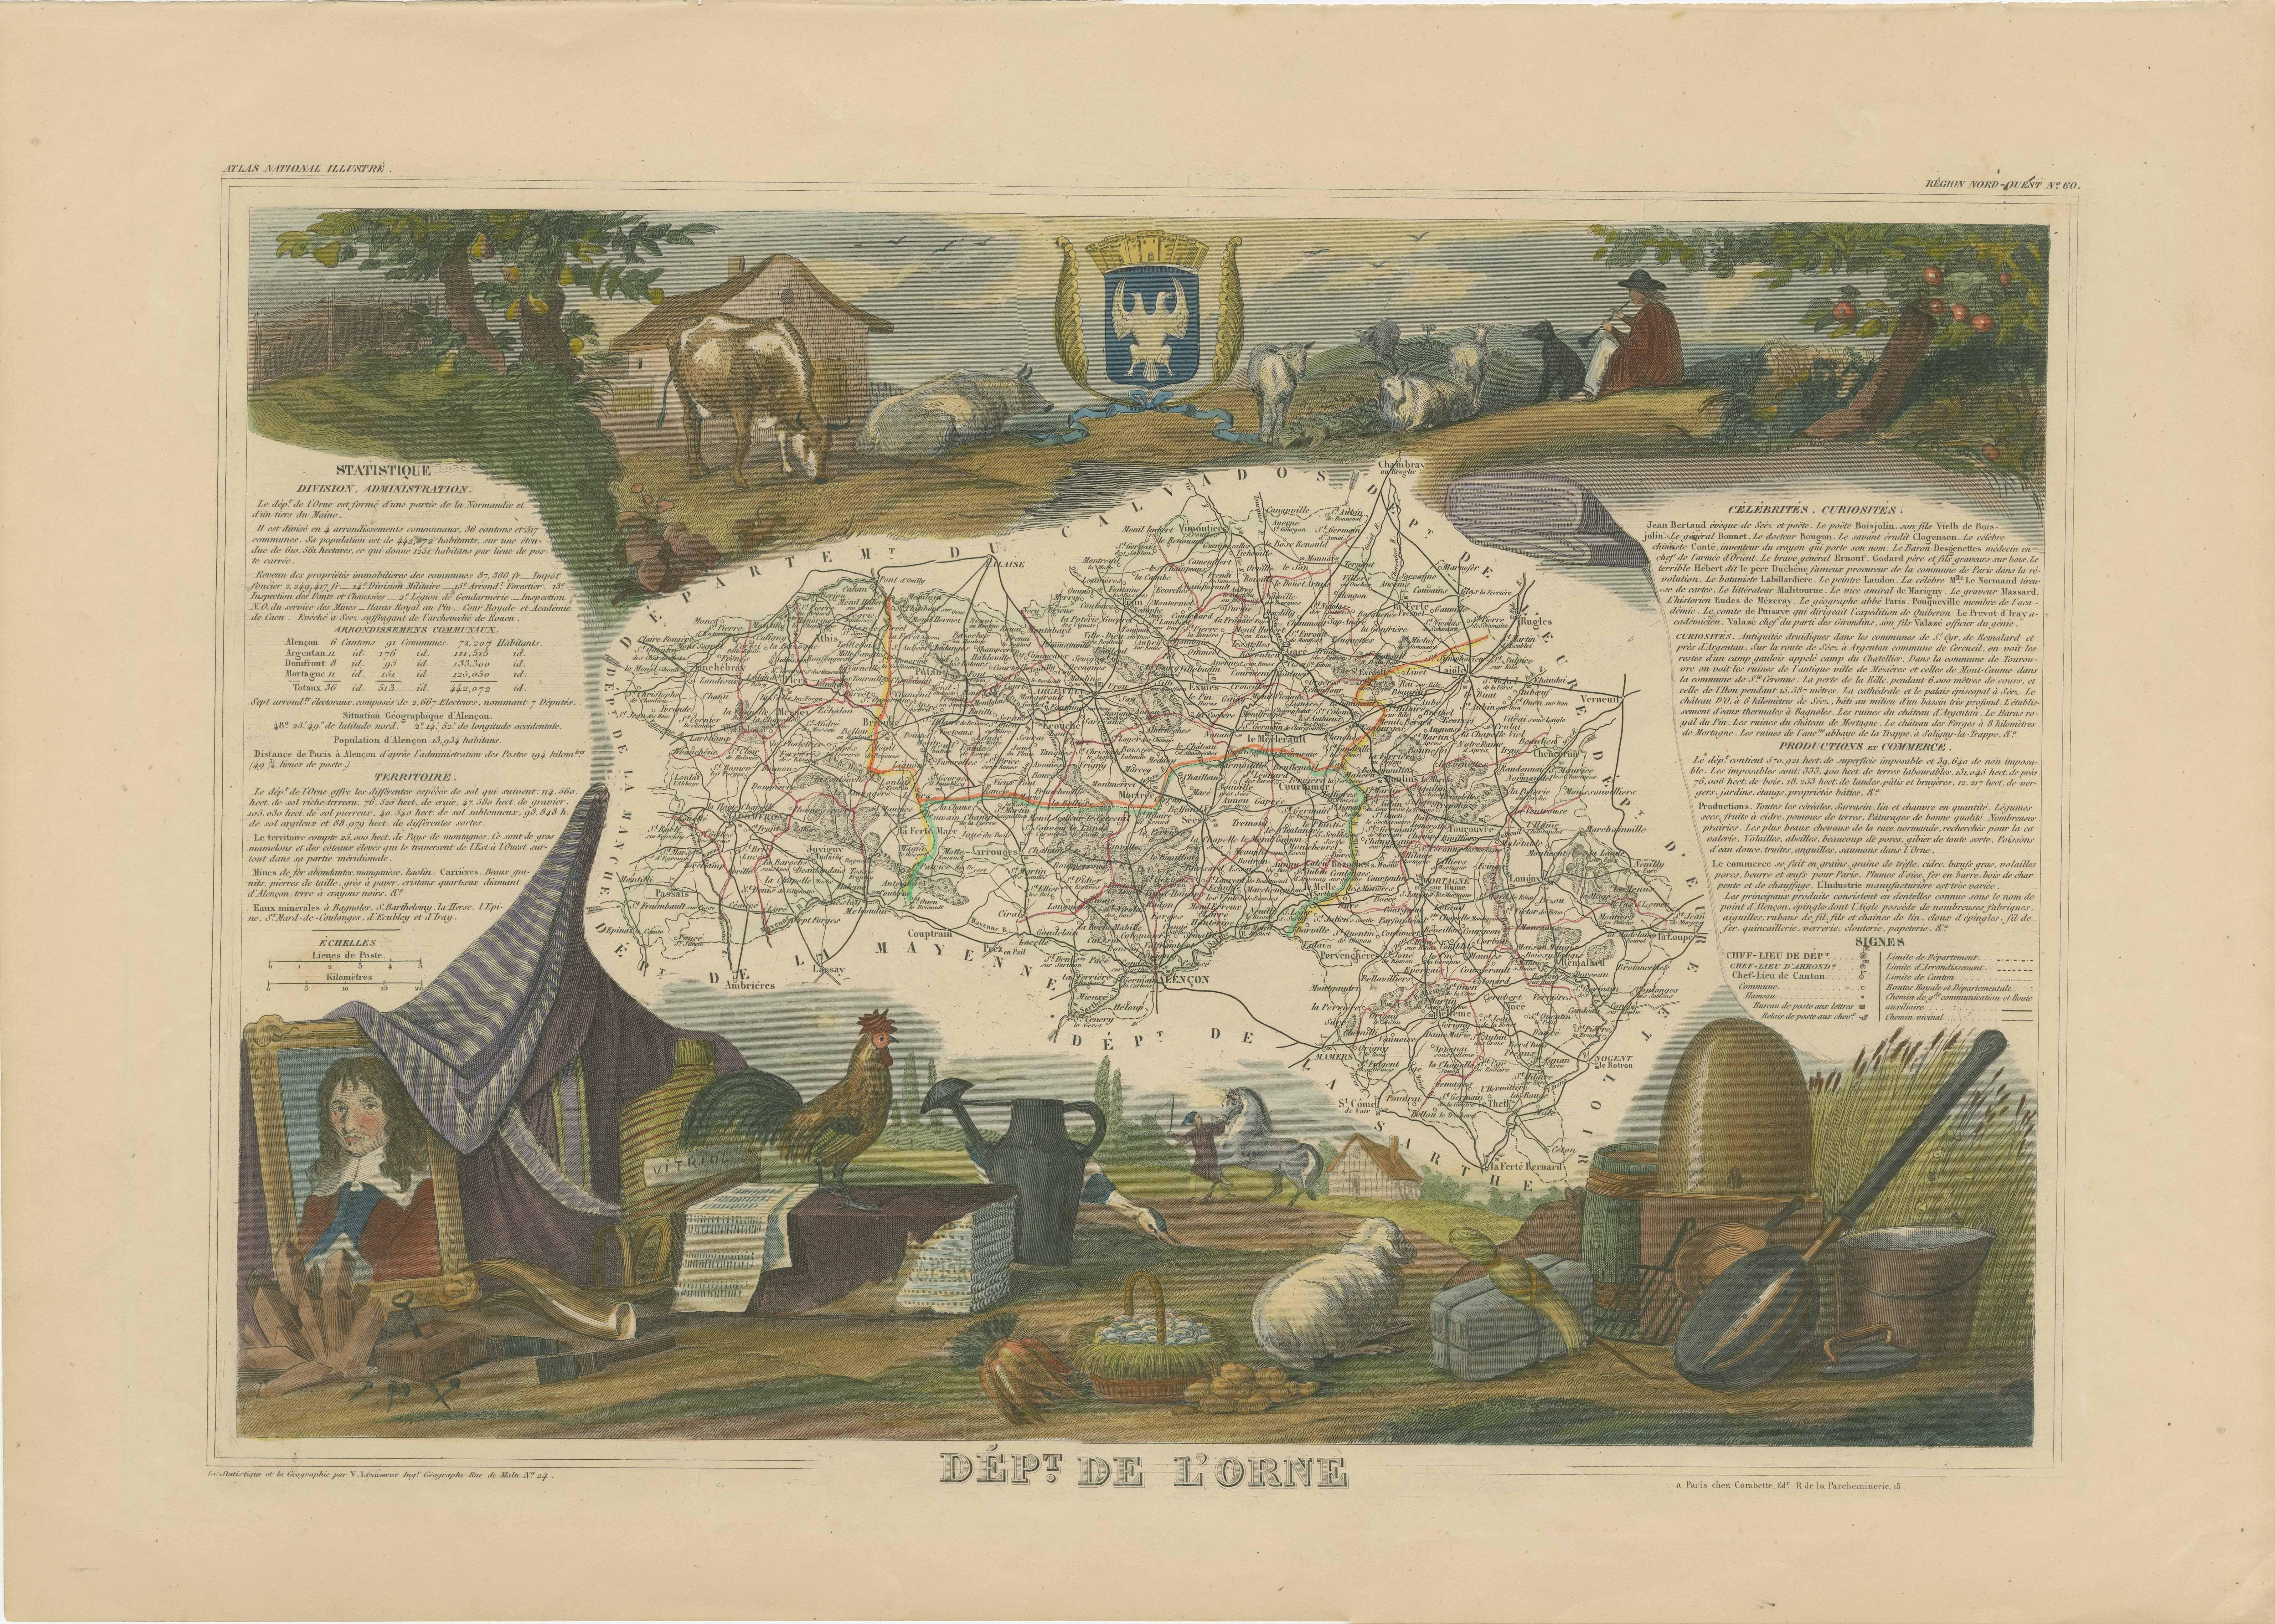 Antike Karte mit dem Titel 'Dépt. de l'Orne'. Karte des französischen Departements Orne, Frankreich. In diesem Gebiet, das zur Normandie gehört, liegt das Dorf Camembert, wo der berühmte Camembert-Käse entwickelt wurde. Camembert ist ein weicher,